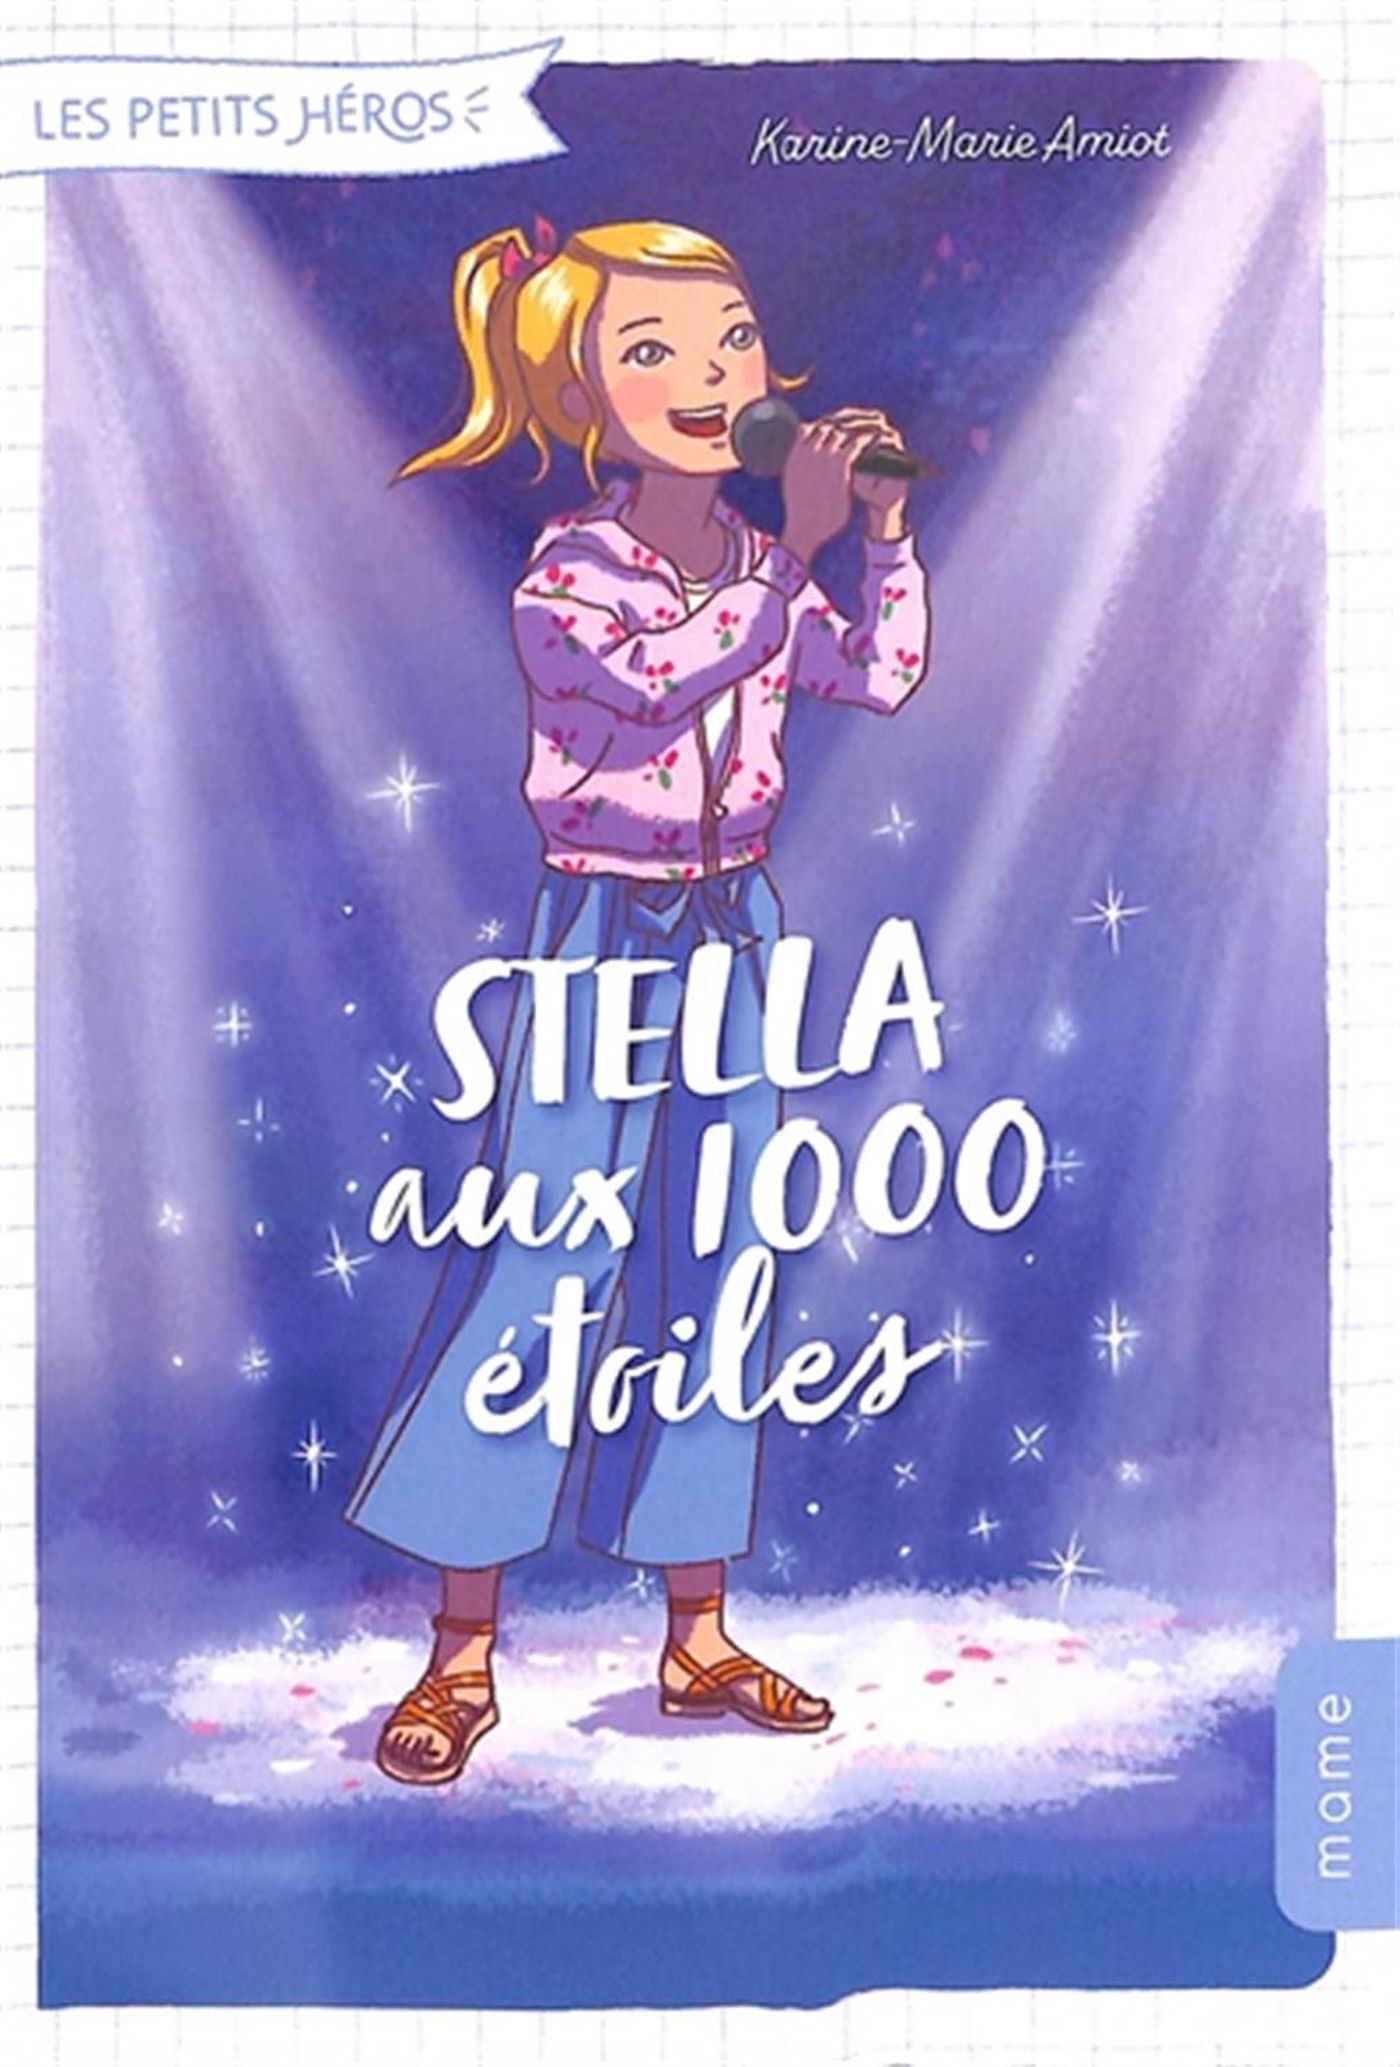 Les petits héros 04 : Stella aux 1000 étoiles | Distribution Prologue